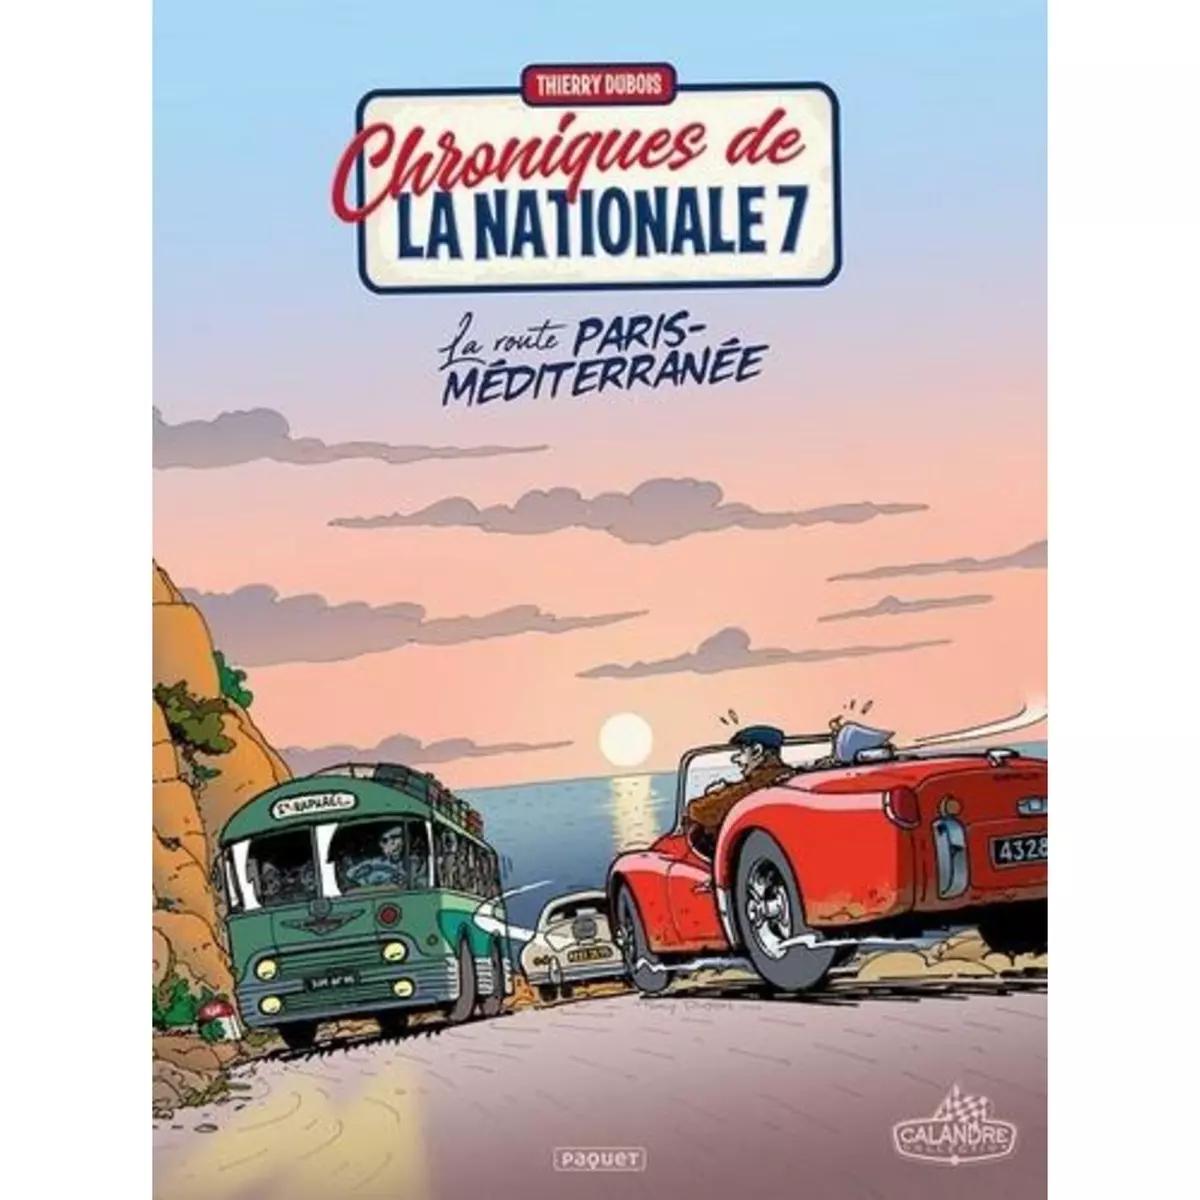  CHRONIQUES DE LA NATIONALE 7 TOME 4 : LA ROUTE PARIS-MEDITERRANEE, Dubois Thierry